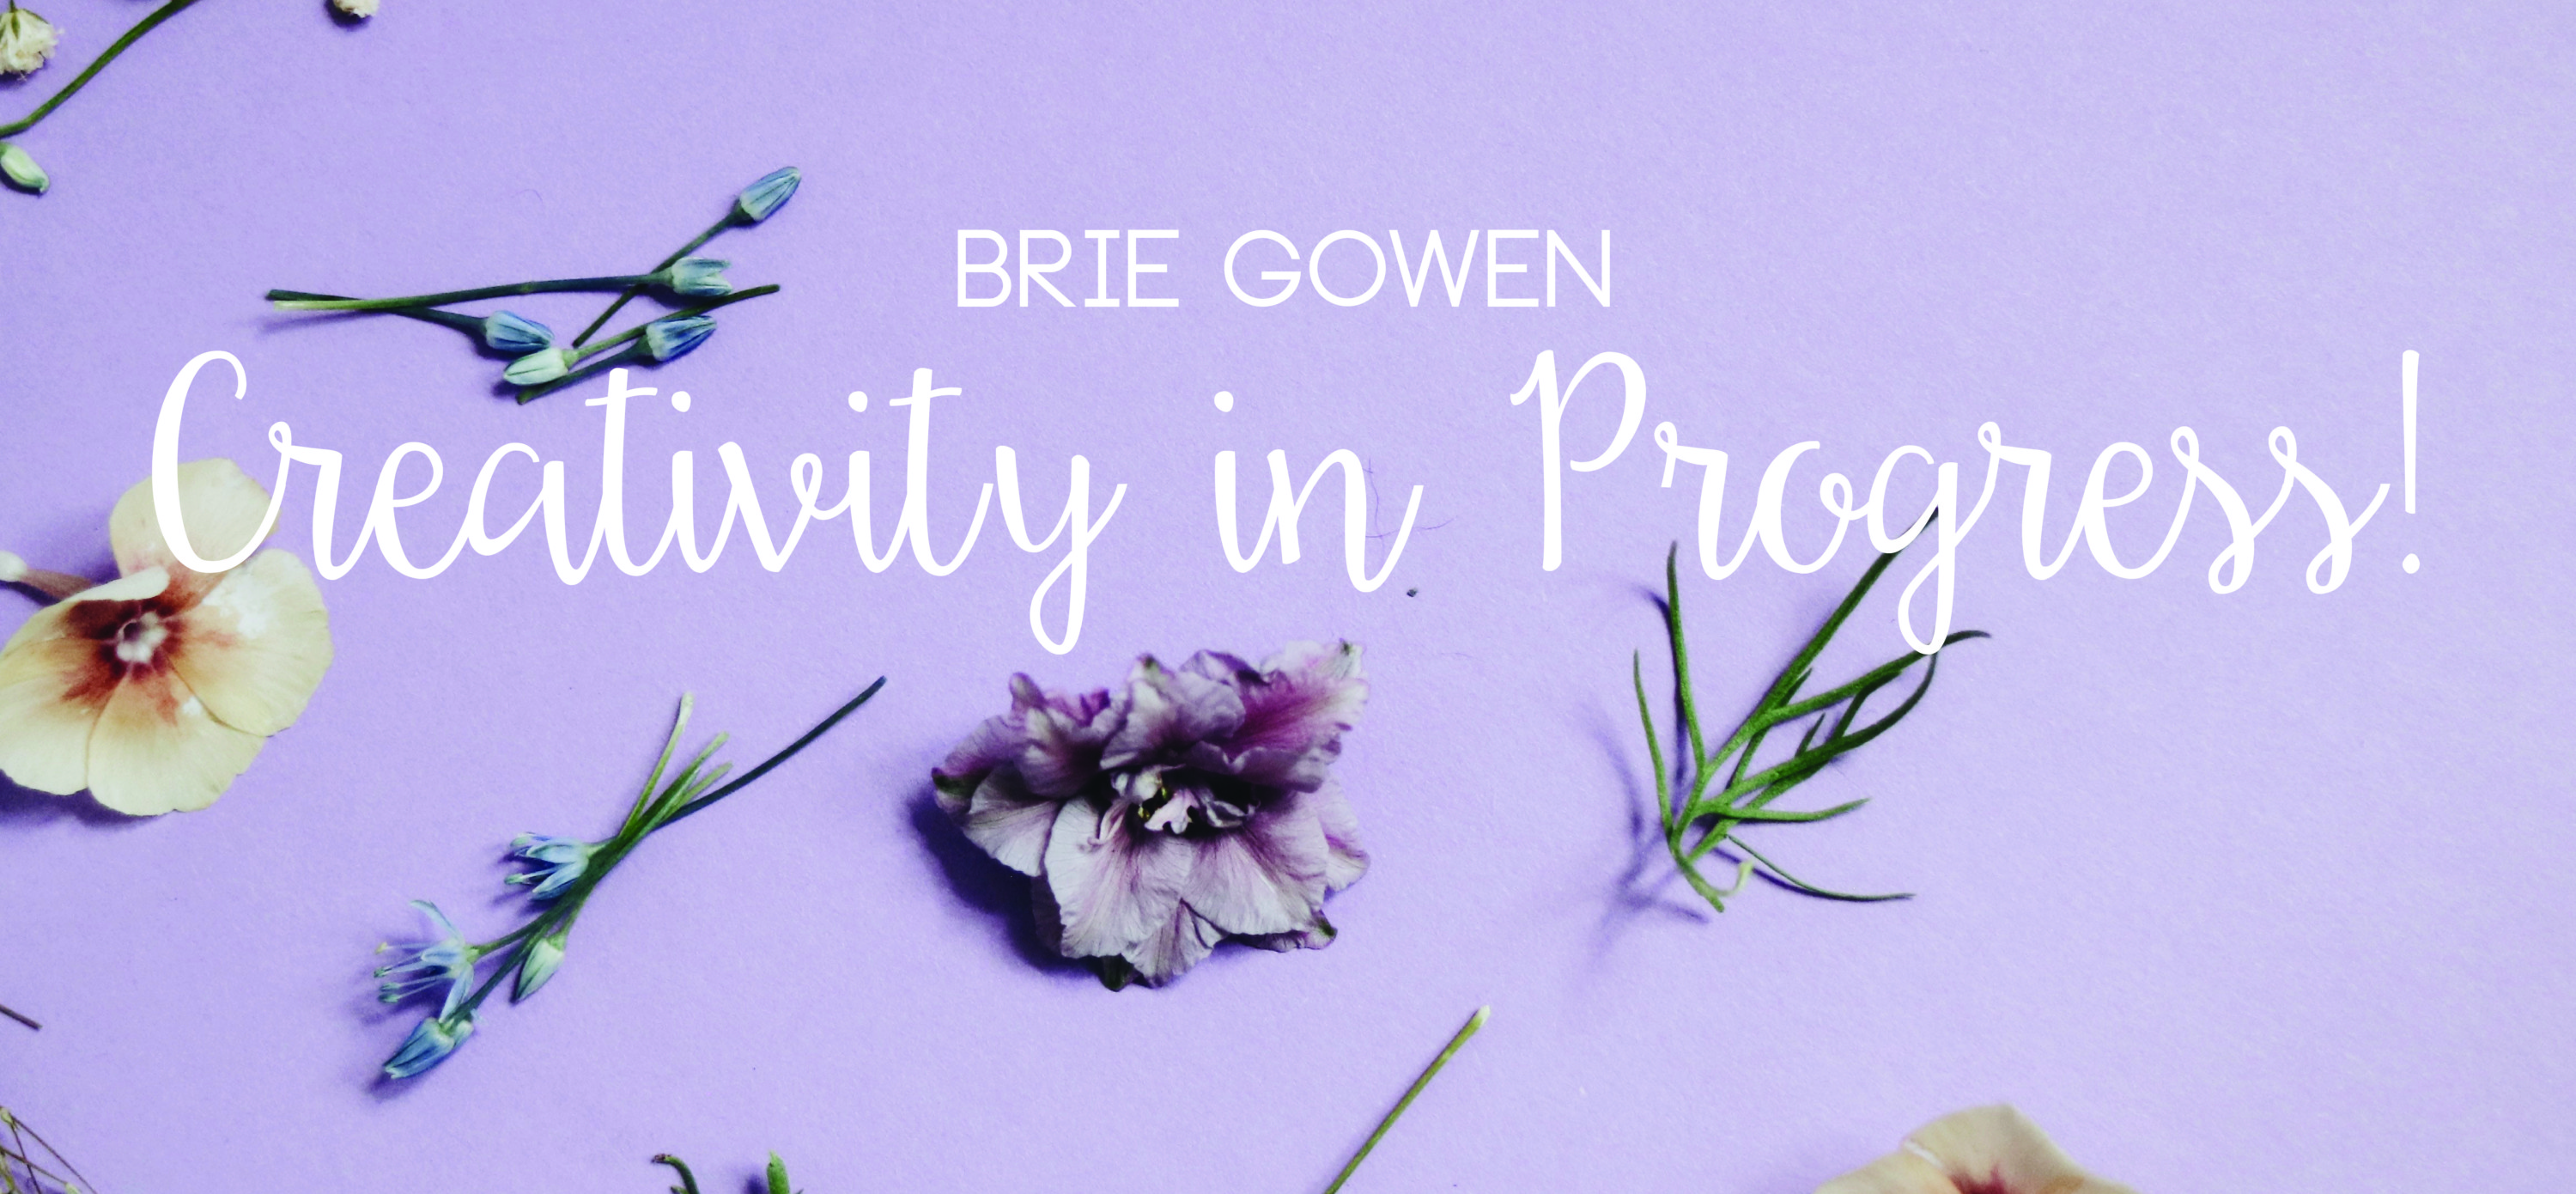 Brie Gowen